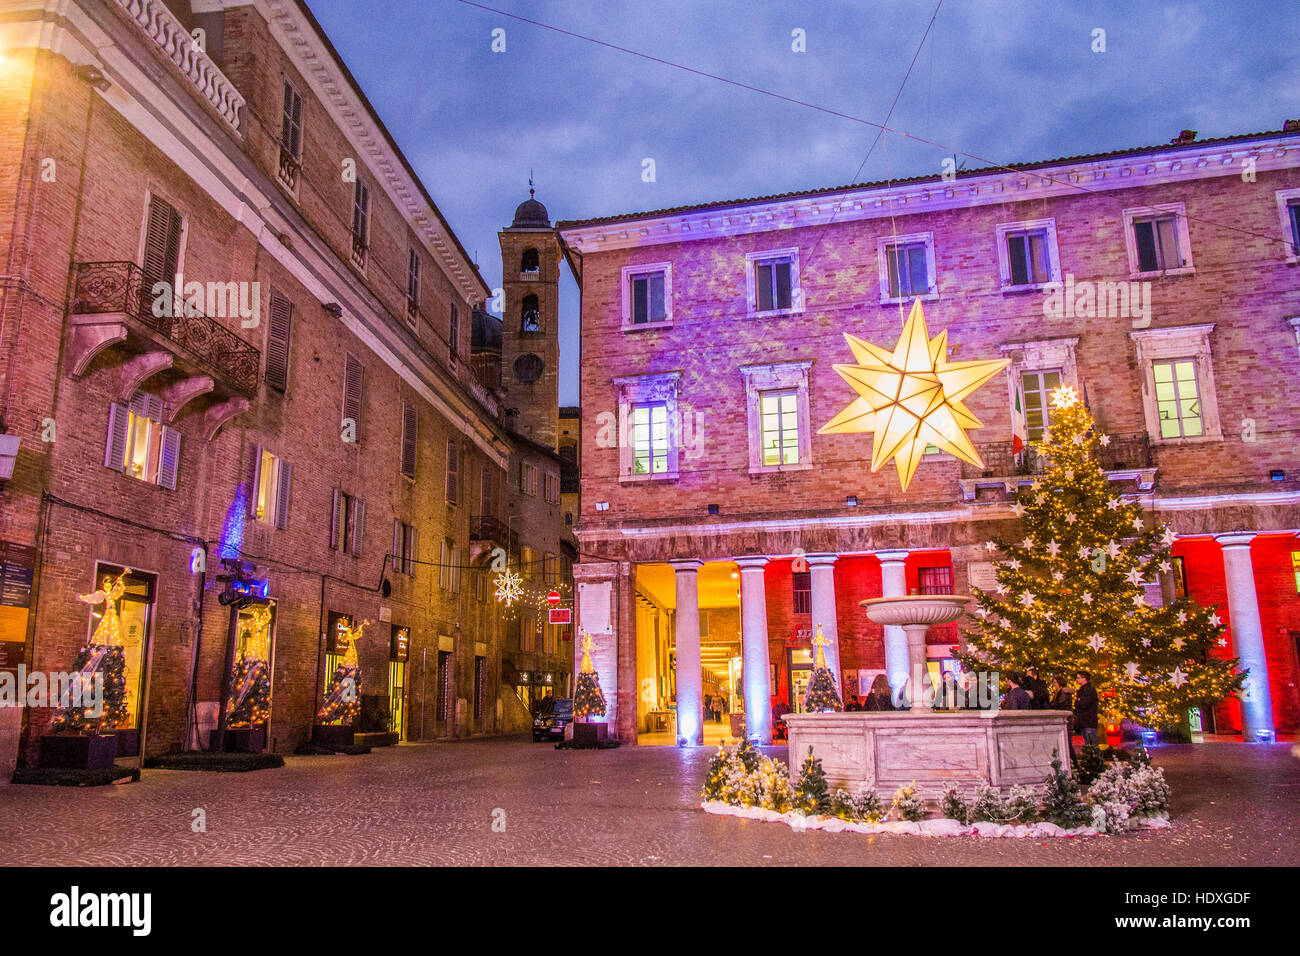 PIazza della Repubblica pieno di decorazioni di Natale, Urbino, città medievale fortificata nella regione Marche, Italia. Foto Stock